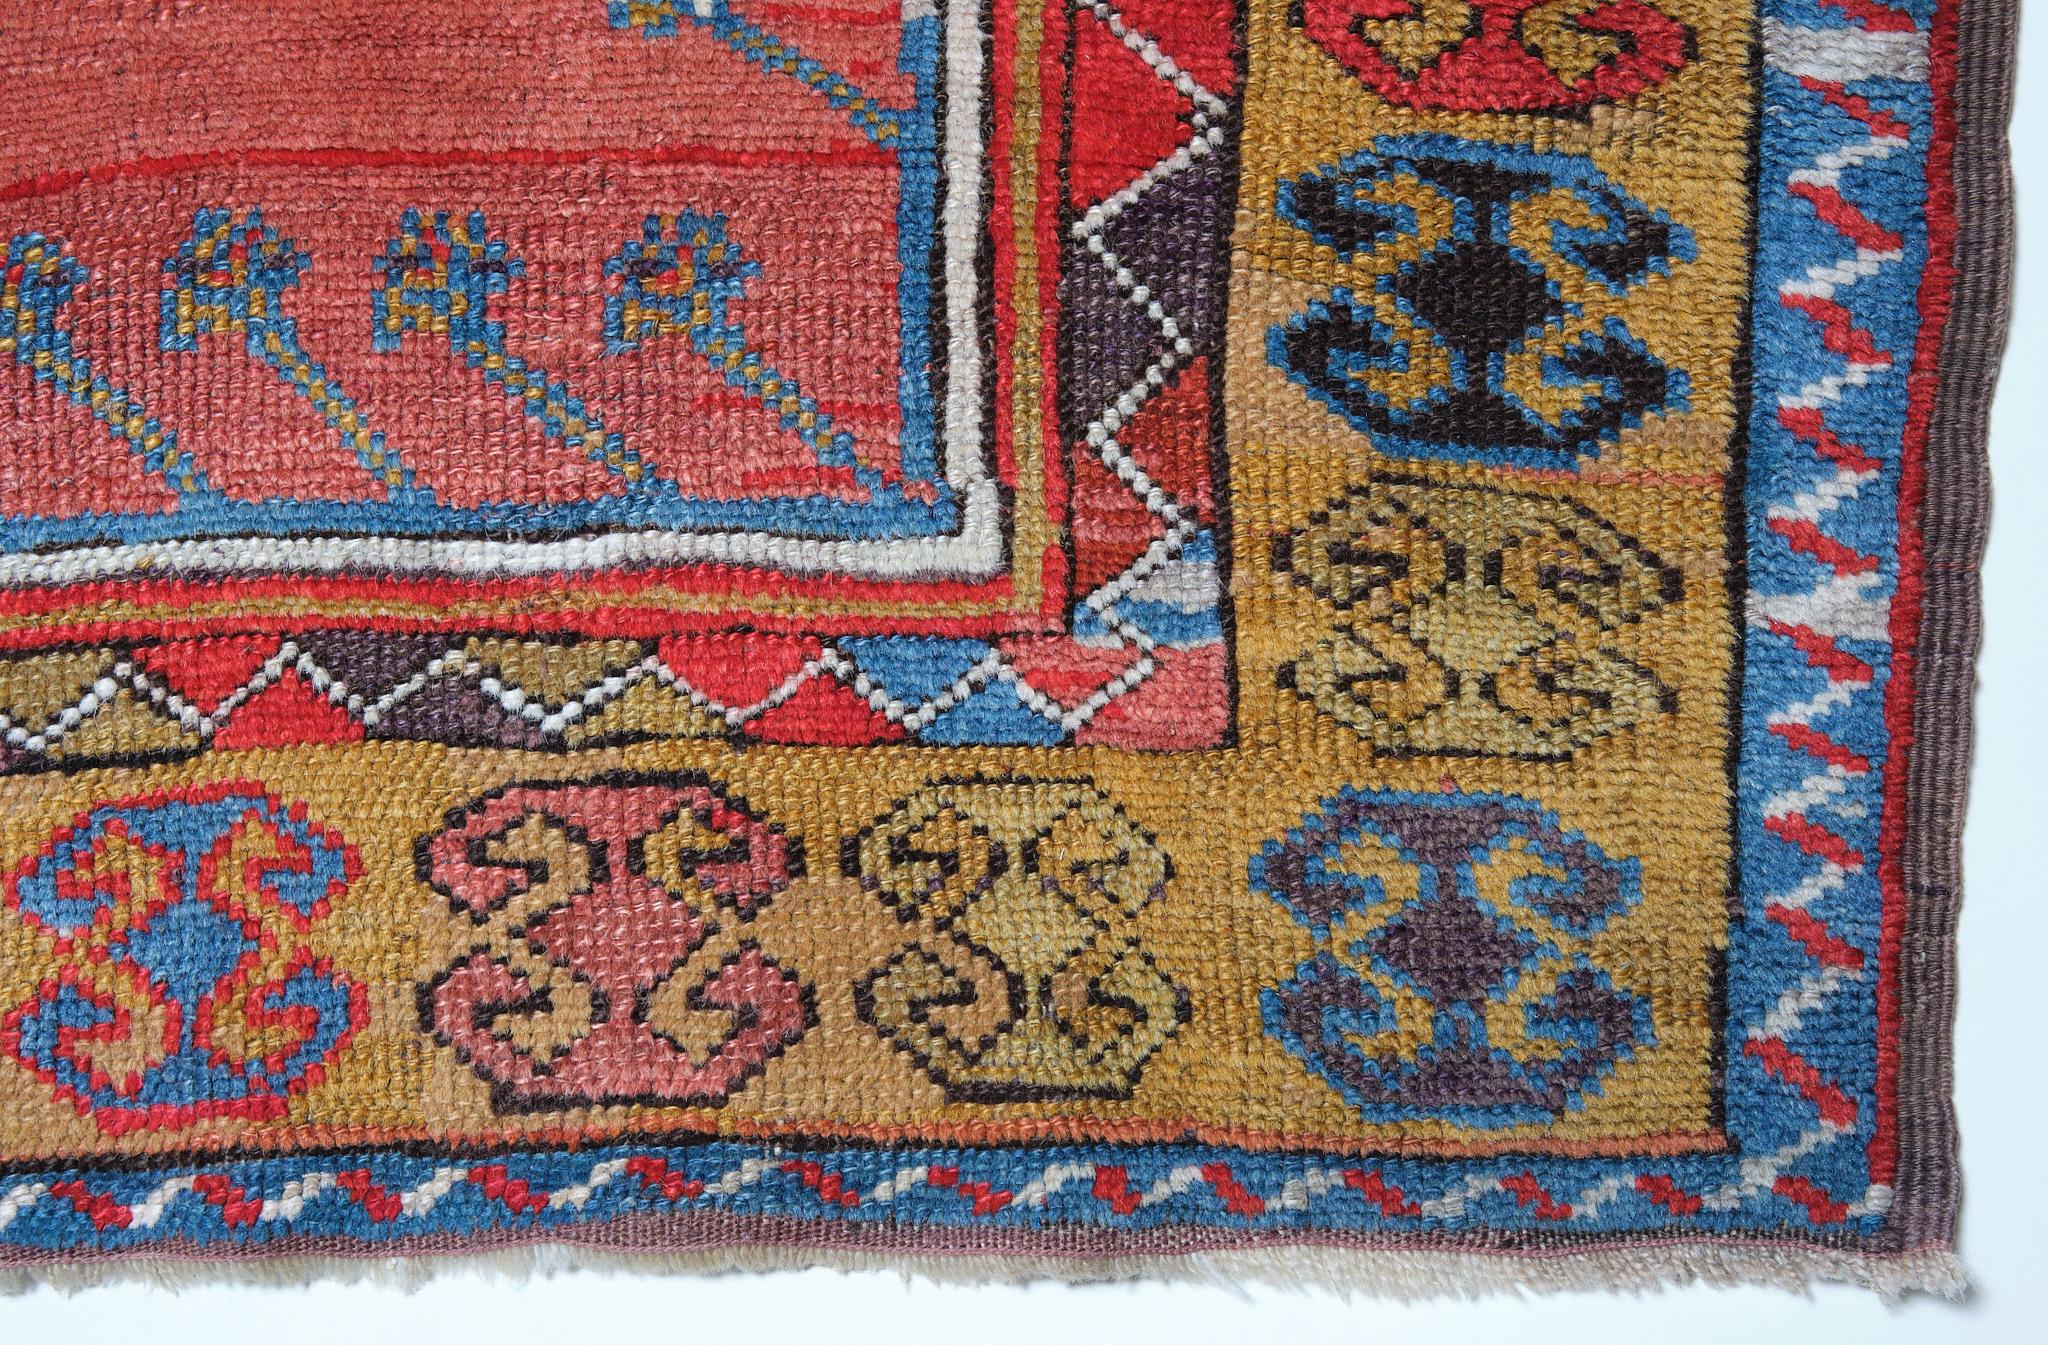 Dies ist ein antiker zentralanatolischer Gebetsteppich aus der Region Konya mit einer seltenen und schönen Farbkomposition.

Dies ist ein einzigartiges Beispiel für einen Gebetsteppich aus einem anatolischen Dorf mit einem typischen Muster und einer